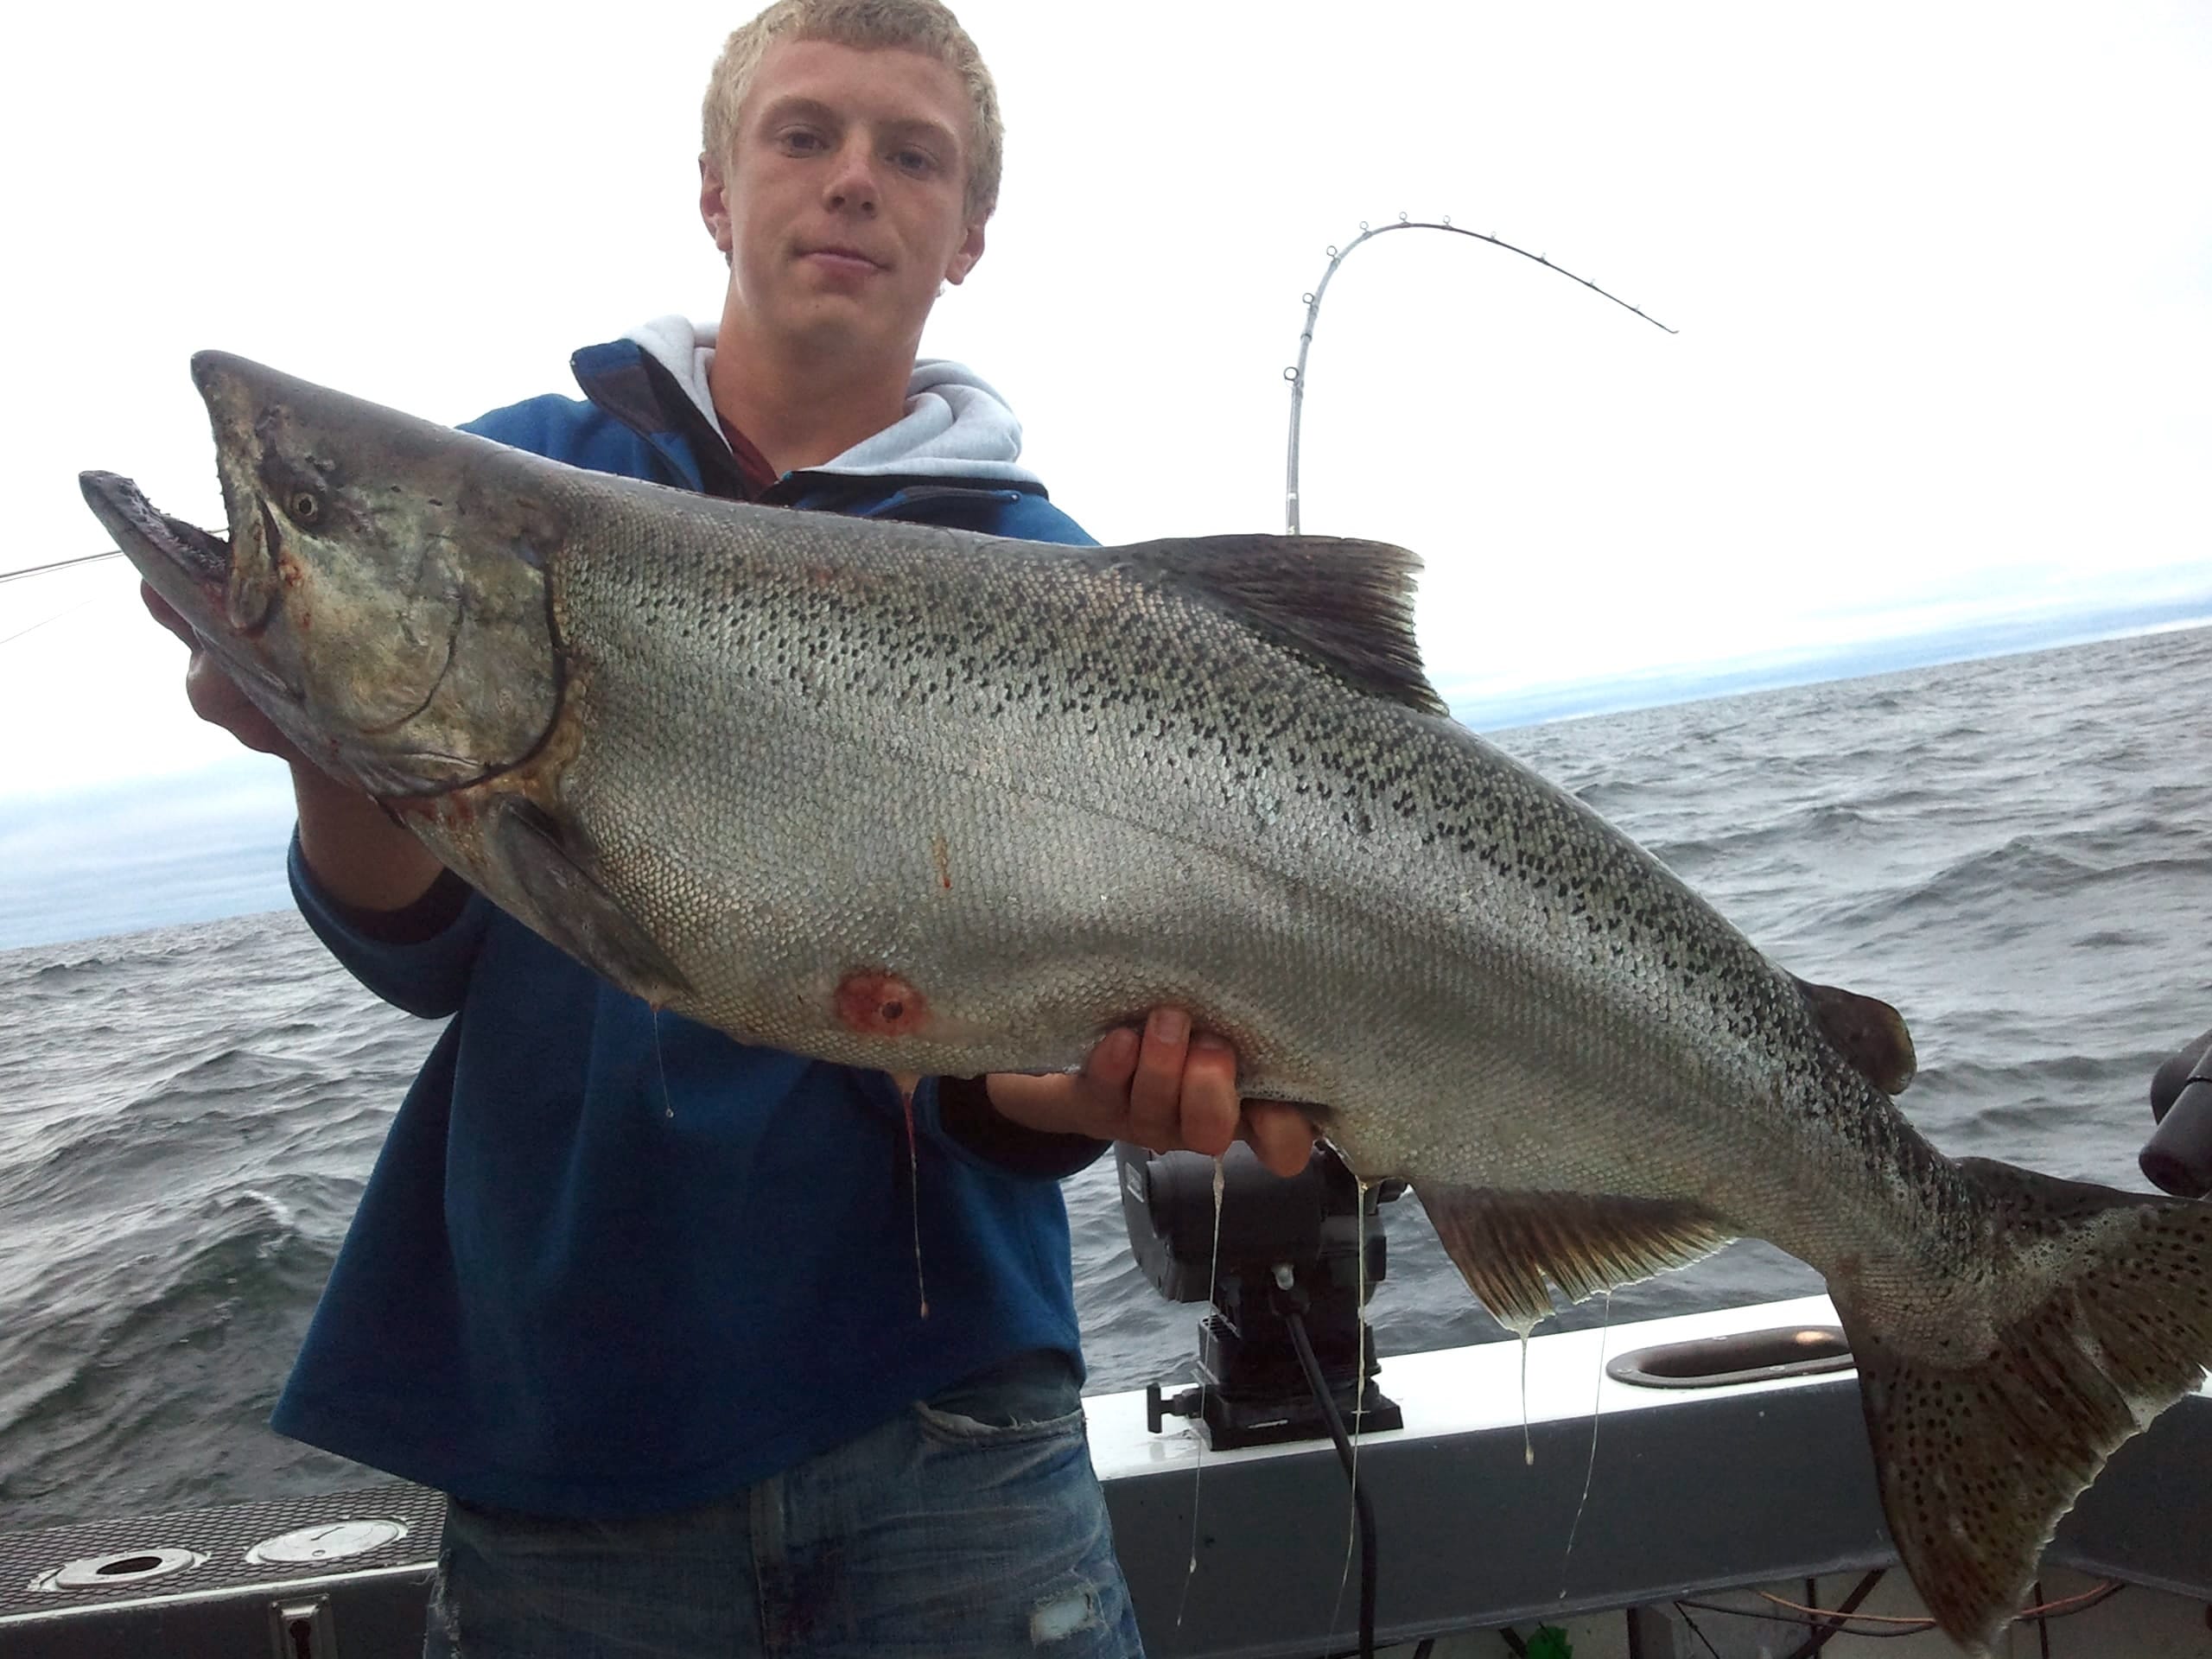 Huge Salmon caught during charter fishing trip on Lake Michigan